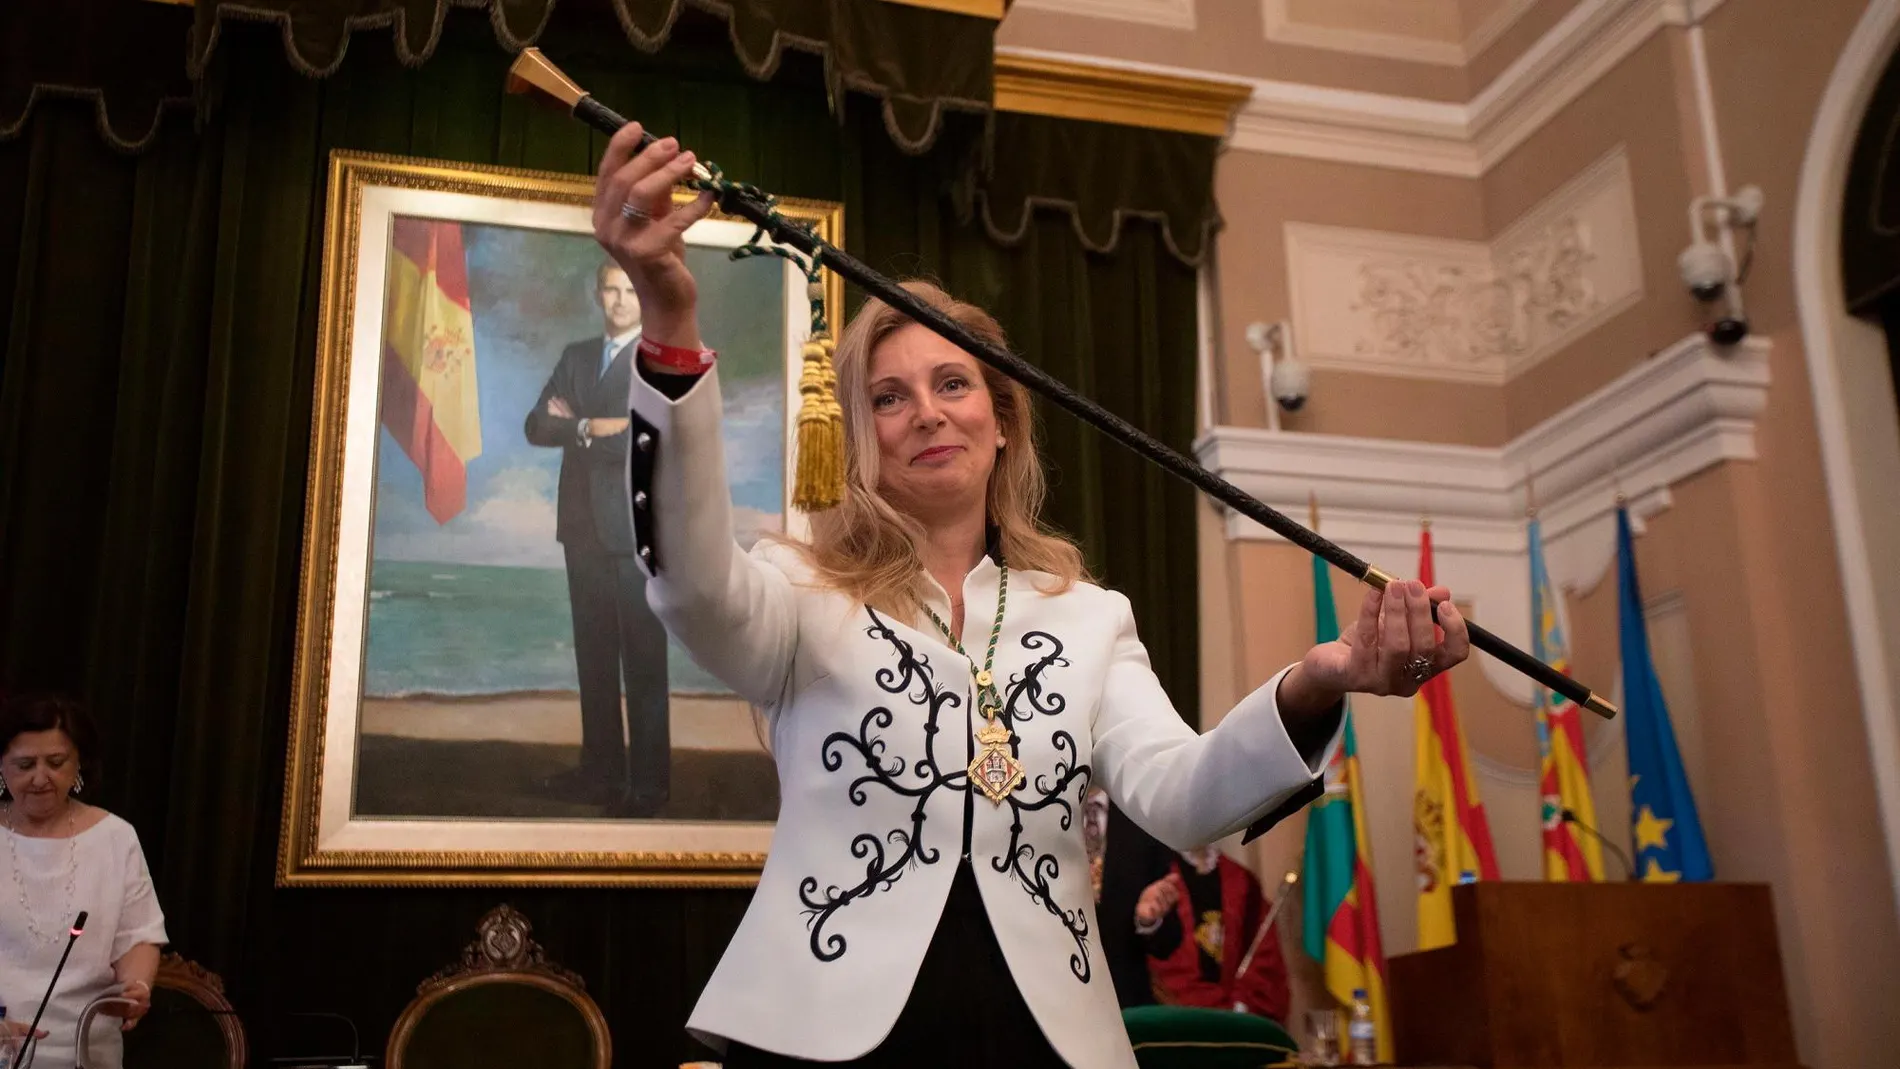 La alcaldesa de Castellón, Amparo Marco, muestra la vara de mando tras haber sido reelegida este sábado por mayoría absoluta al conseguir el apoyo de 15 concejales -de PSPV-PSOE, Compromís y Unides Podem-Castelló en Moviment-Esquerra Unida. EFE/Domenech Castelló